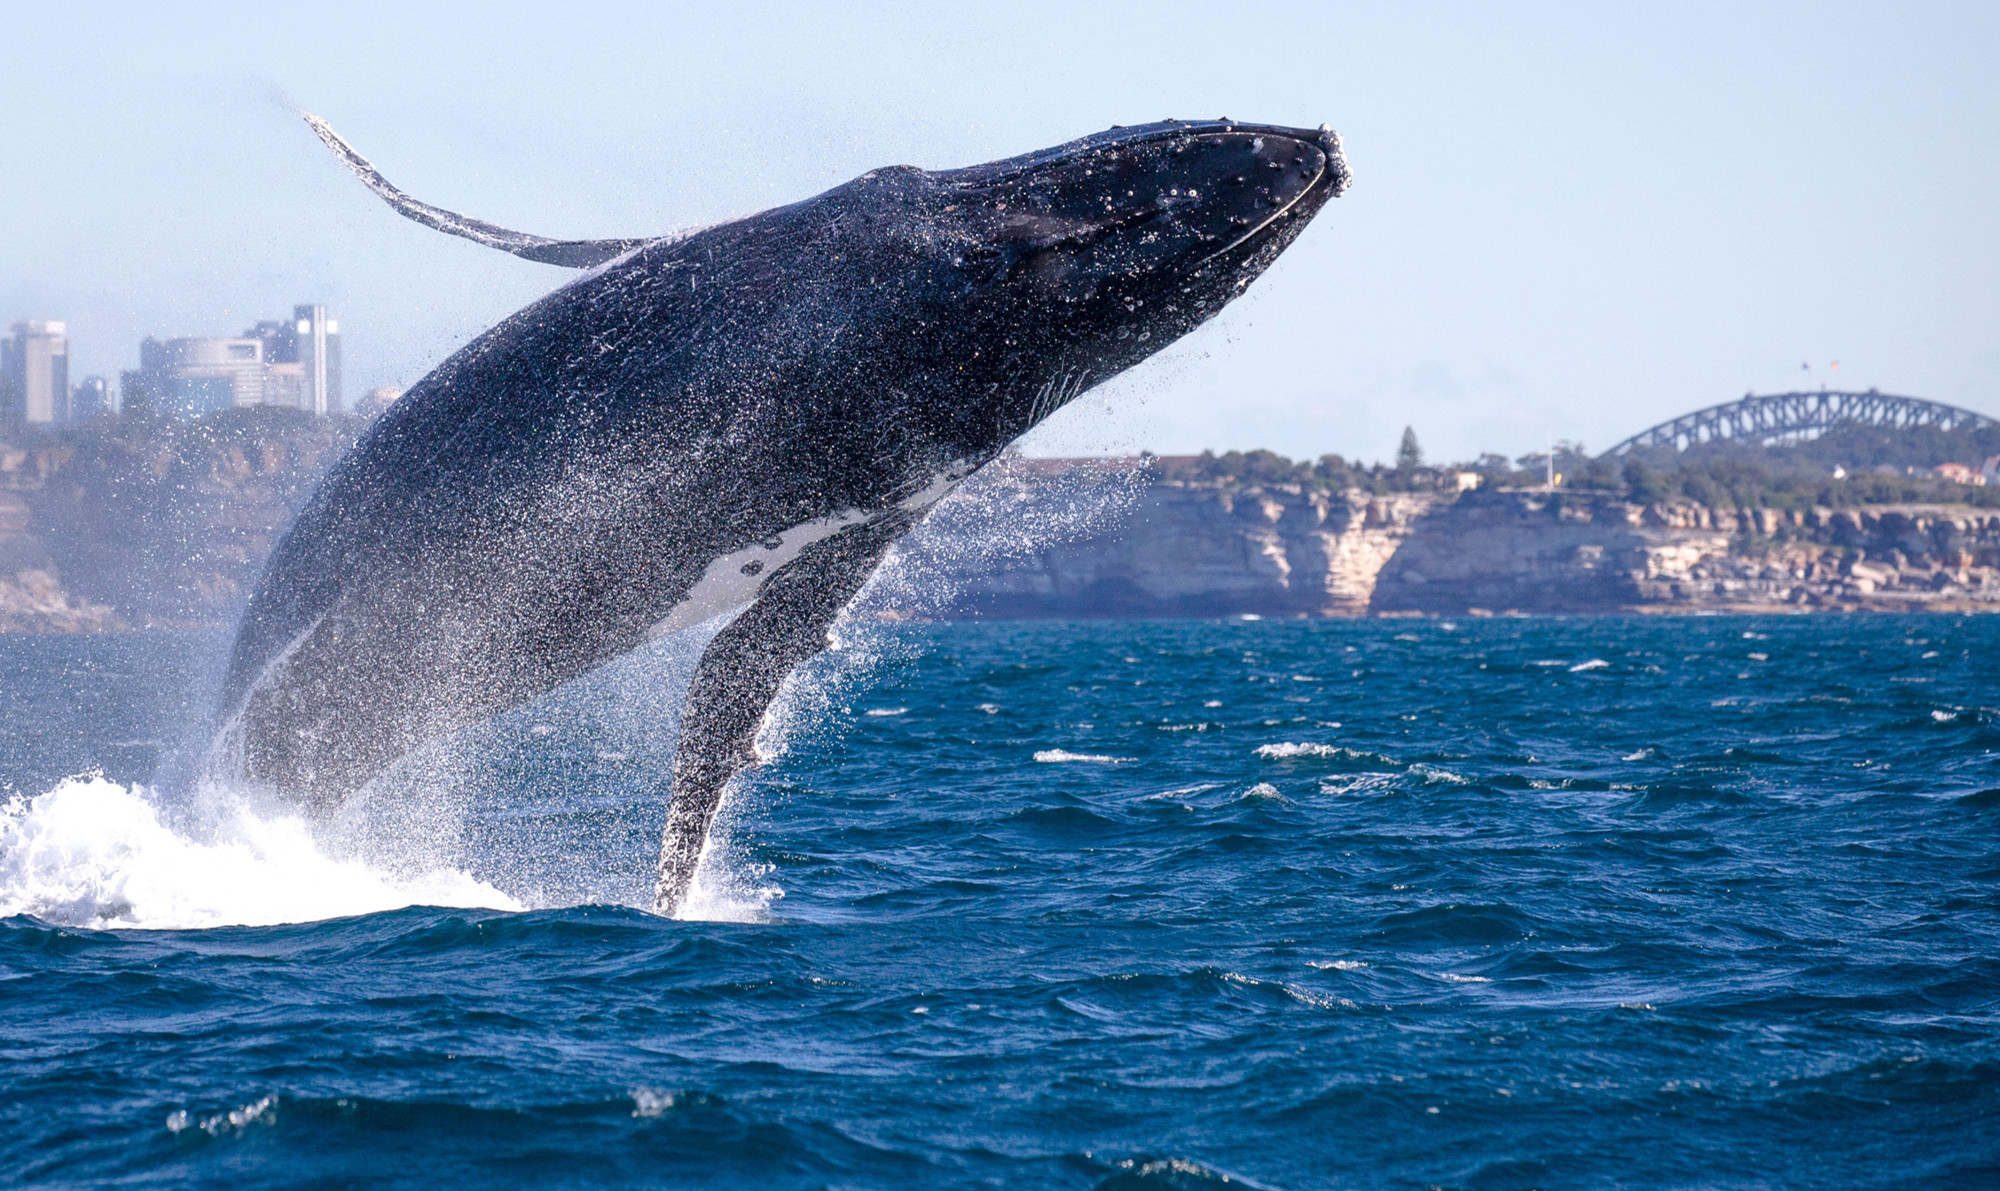 为什么鲸鱼会跃出水面然后再重重地摔进海里?